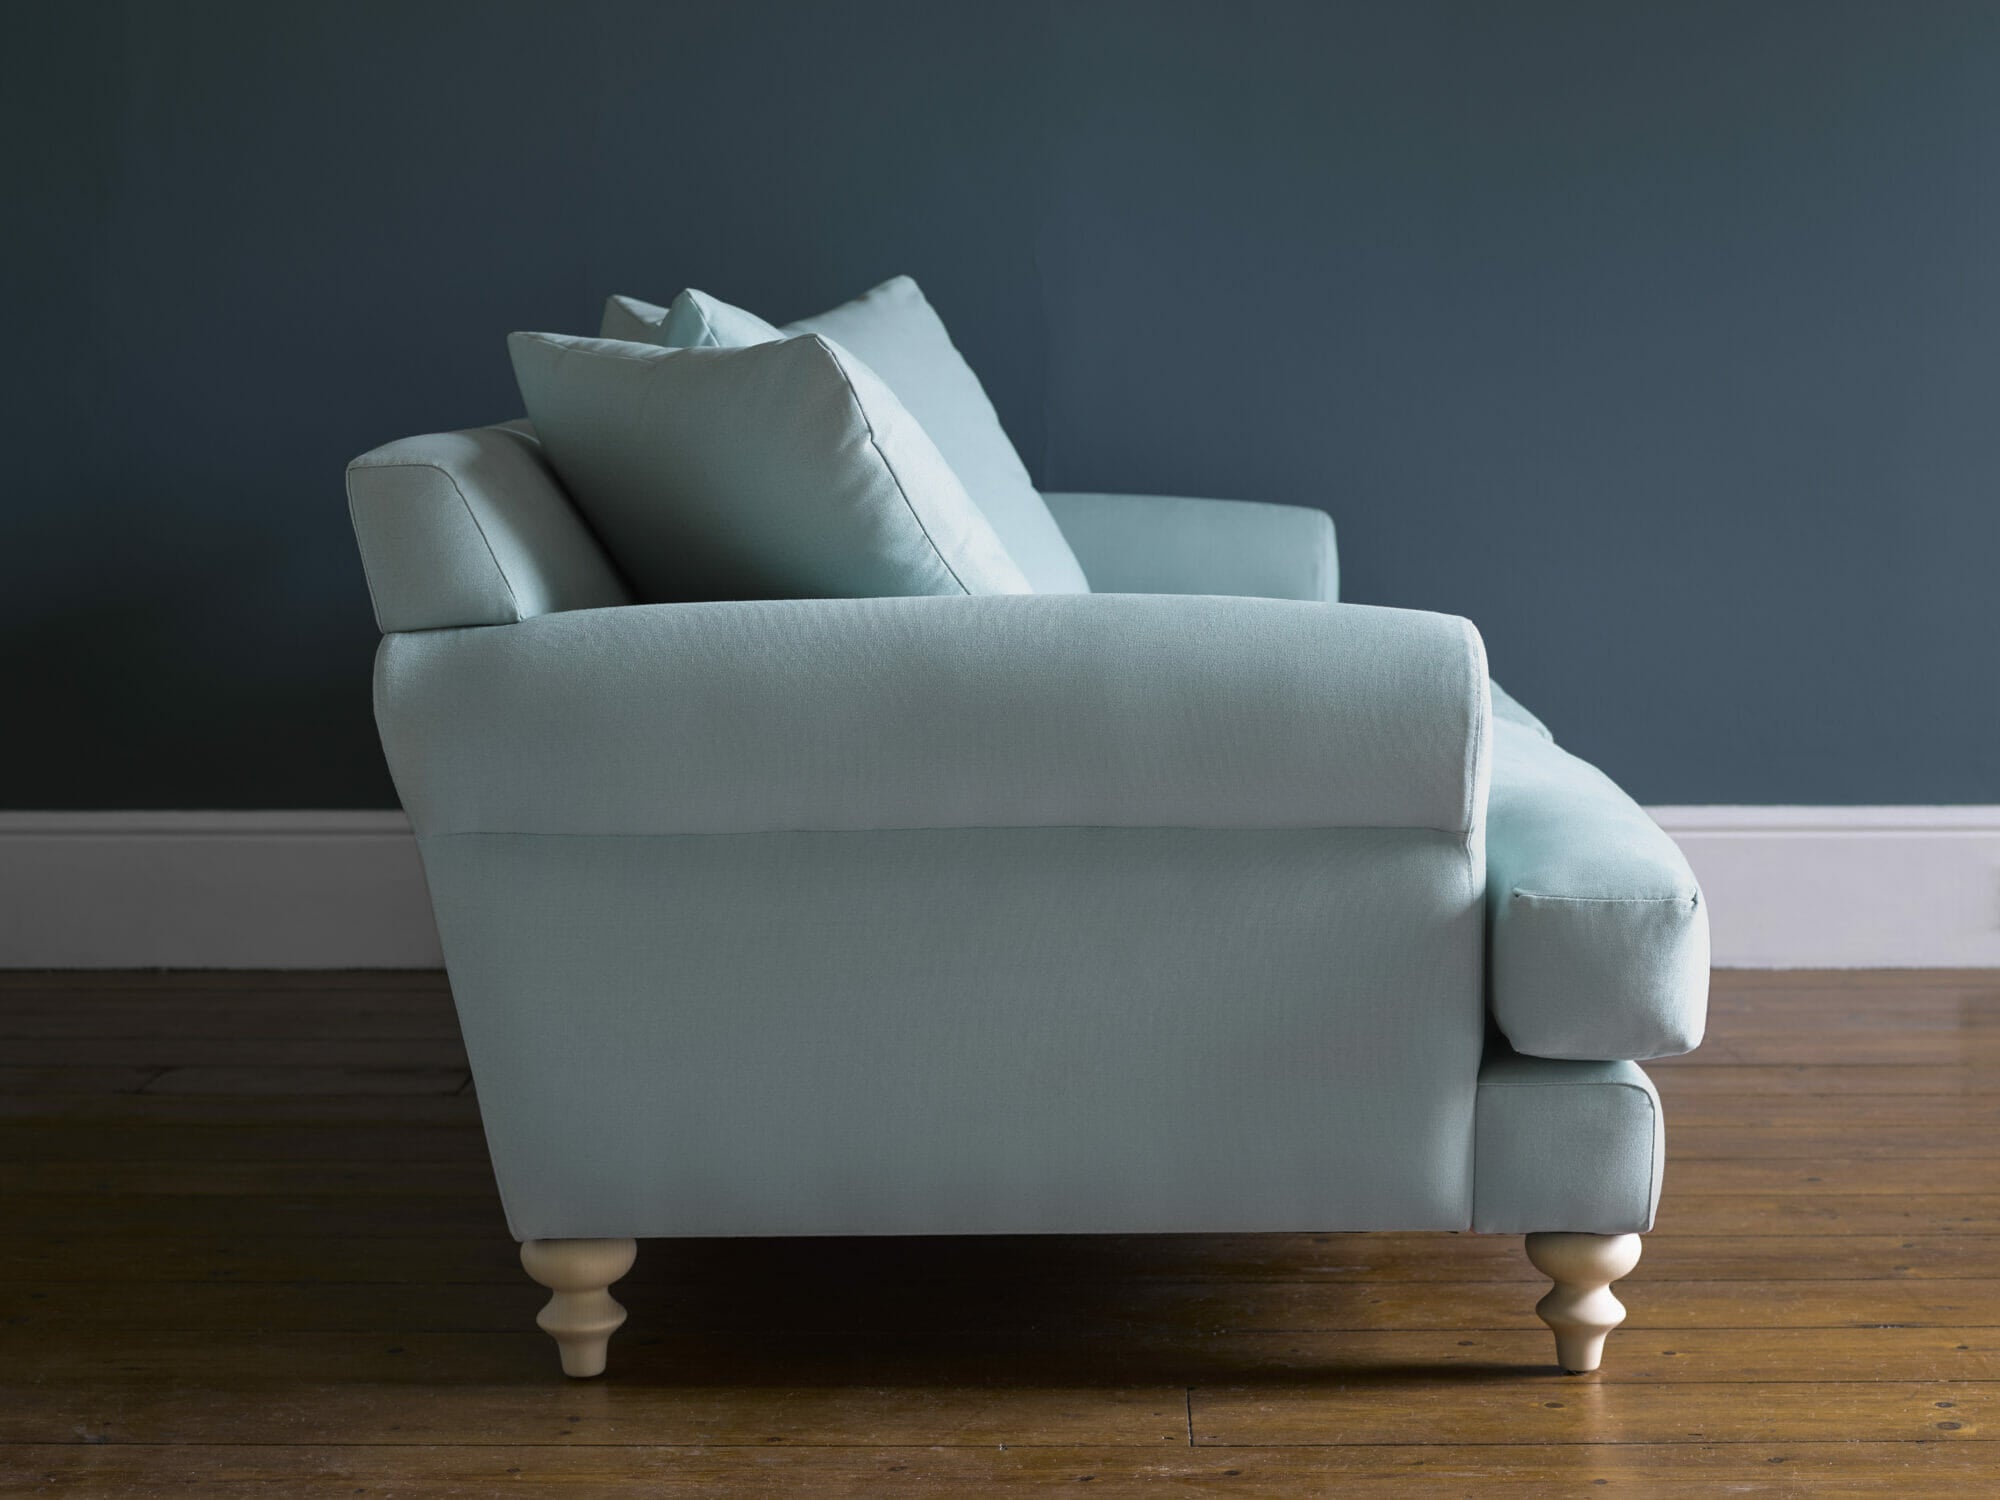 Teddy Pumice House Herringbone Weave Sofa - 2.5 Seater